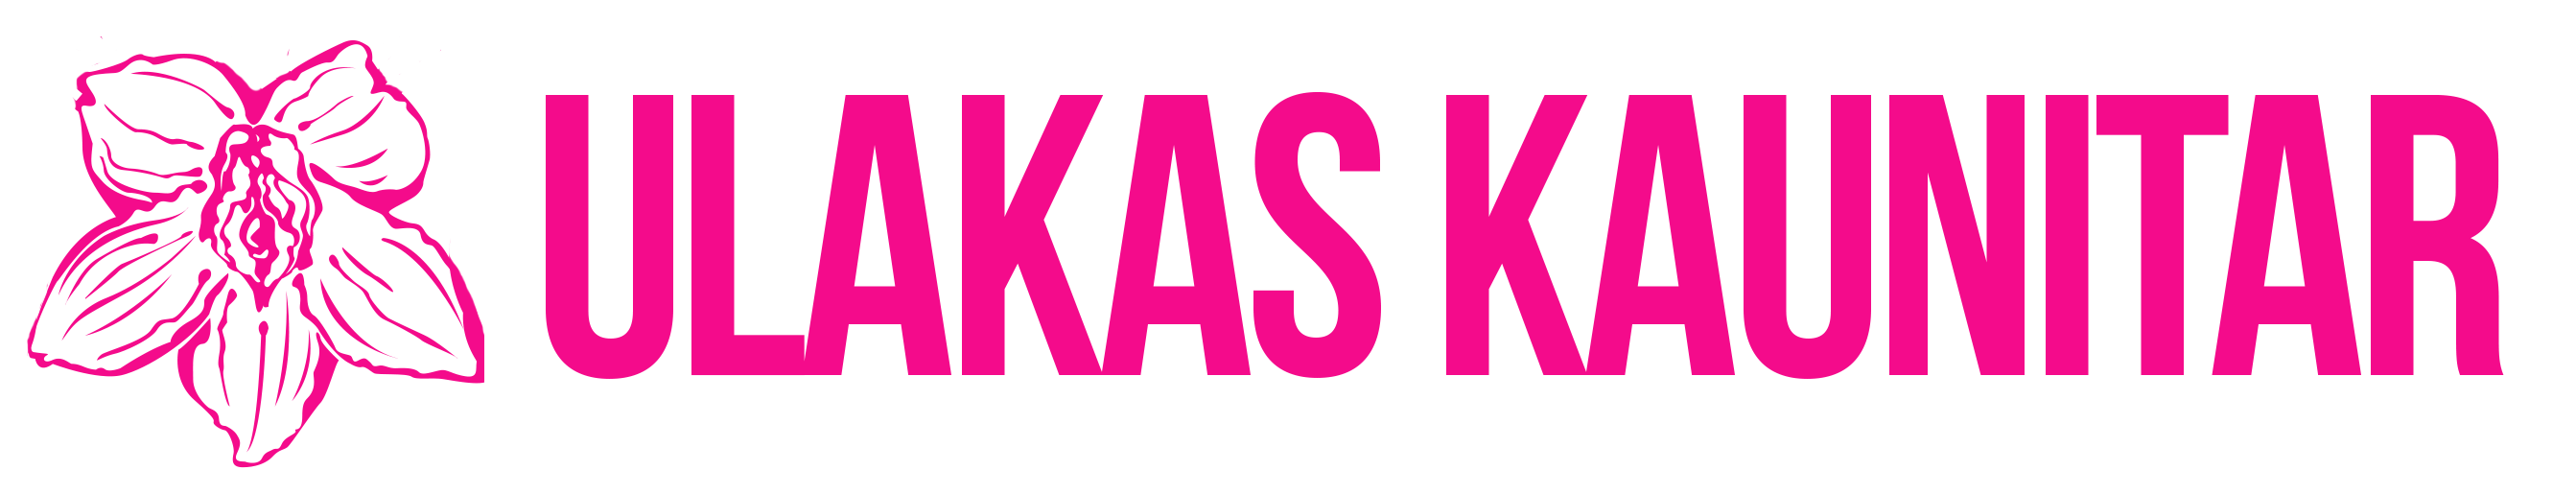 Ulaka_Kaunitari_Logo_varv_transparent